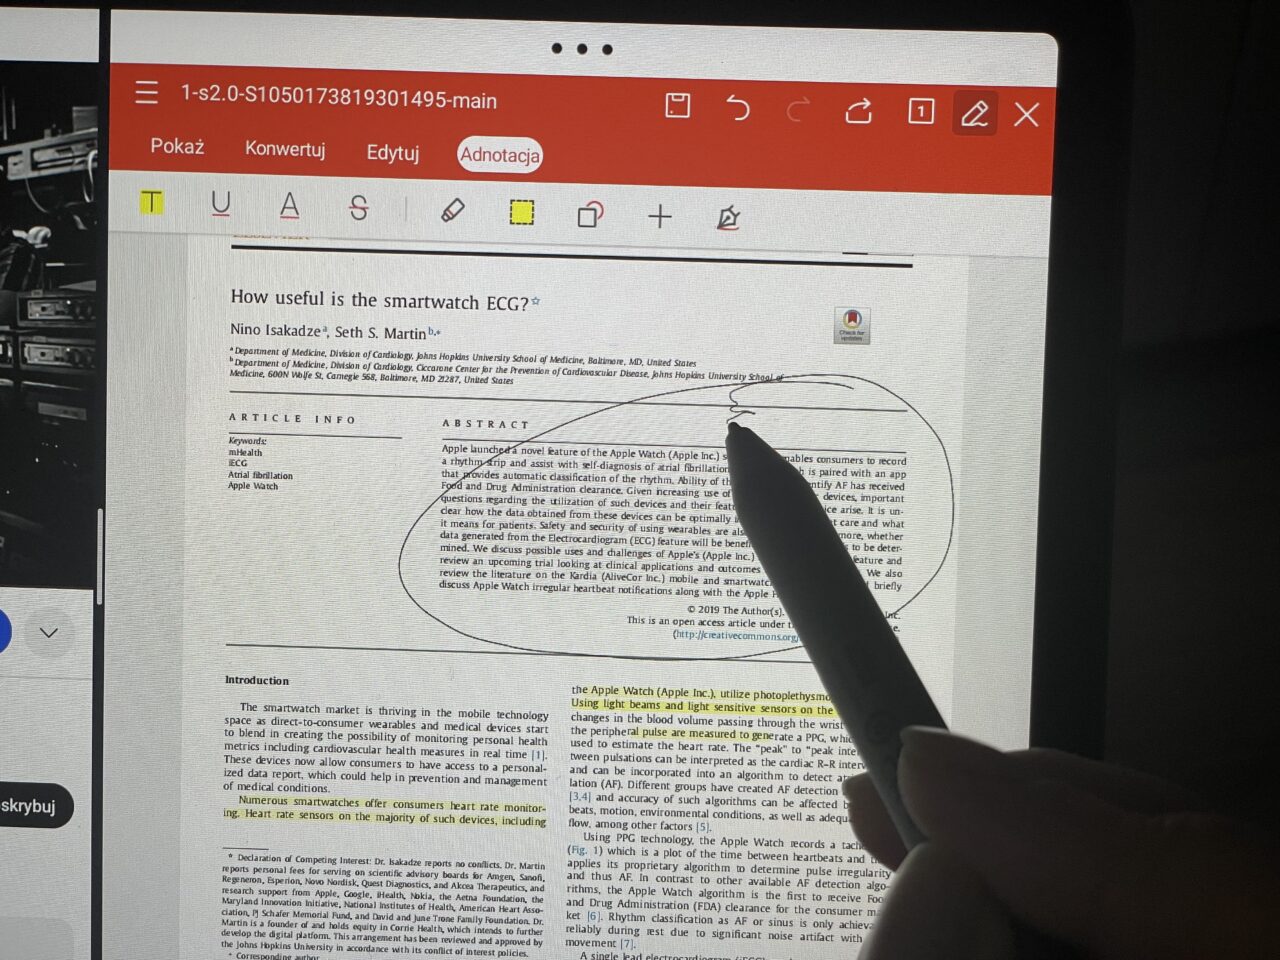 Dłoń używająca cyfrowego pióra do podkreślenia tekst na ekranie tabletu wyświetlającego naukowy artykuł zatytułowany "How useful is the smartwatch ECG?".